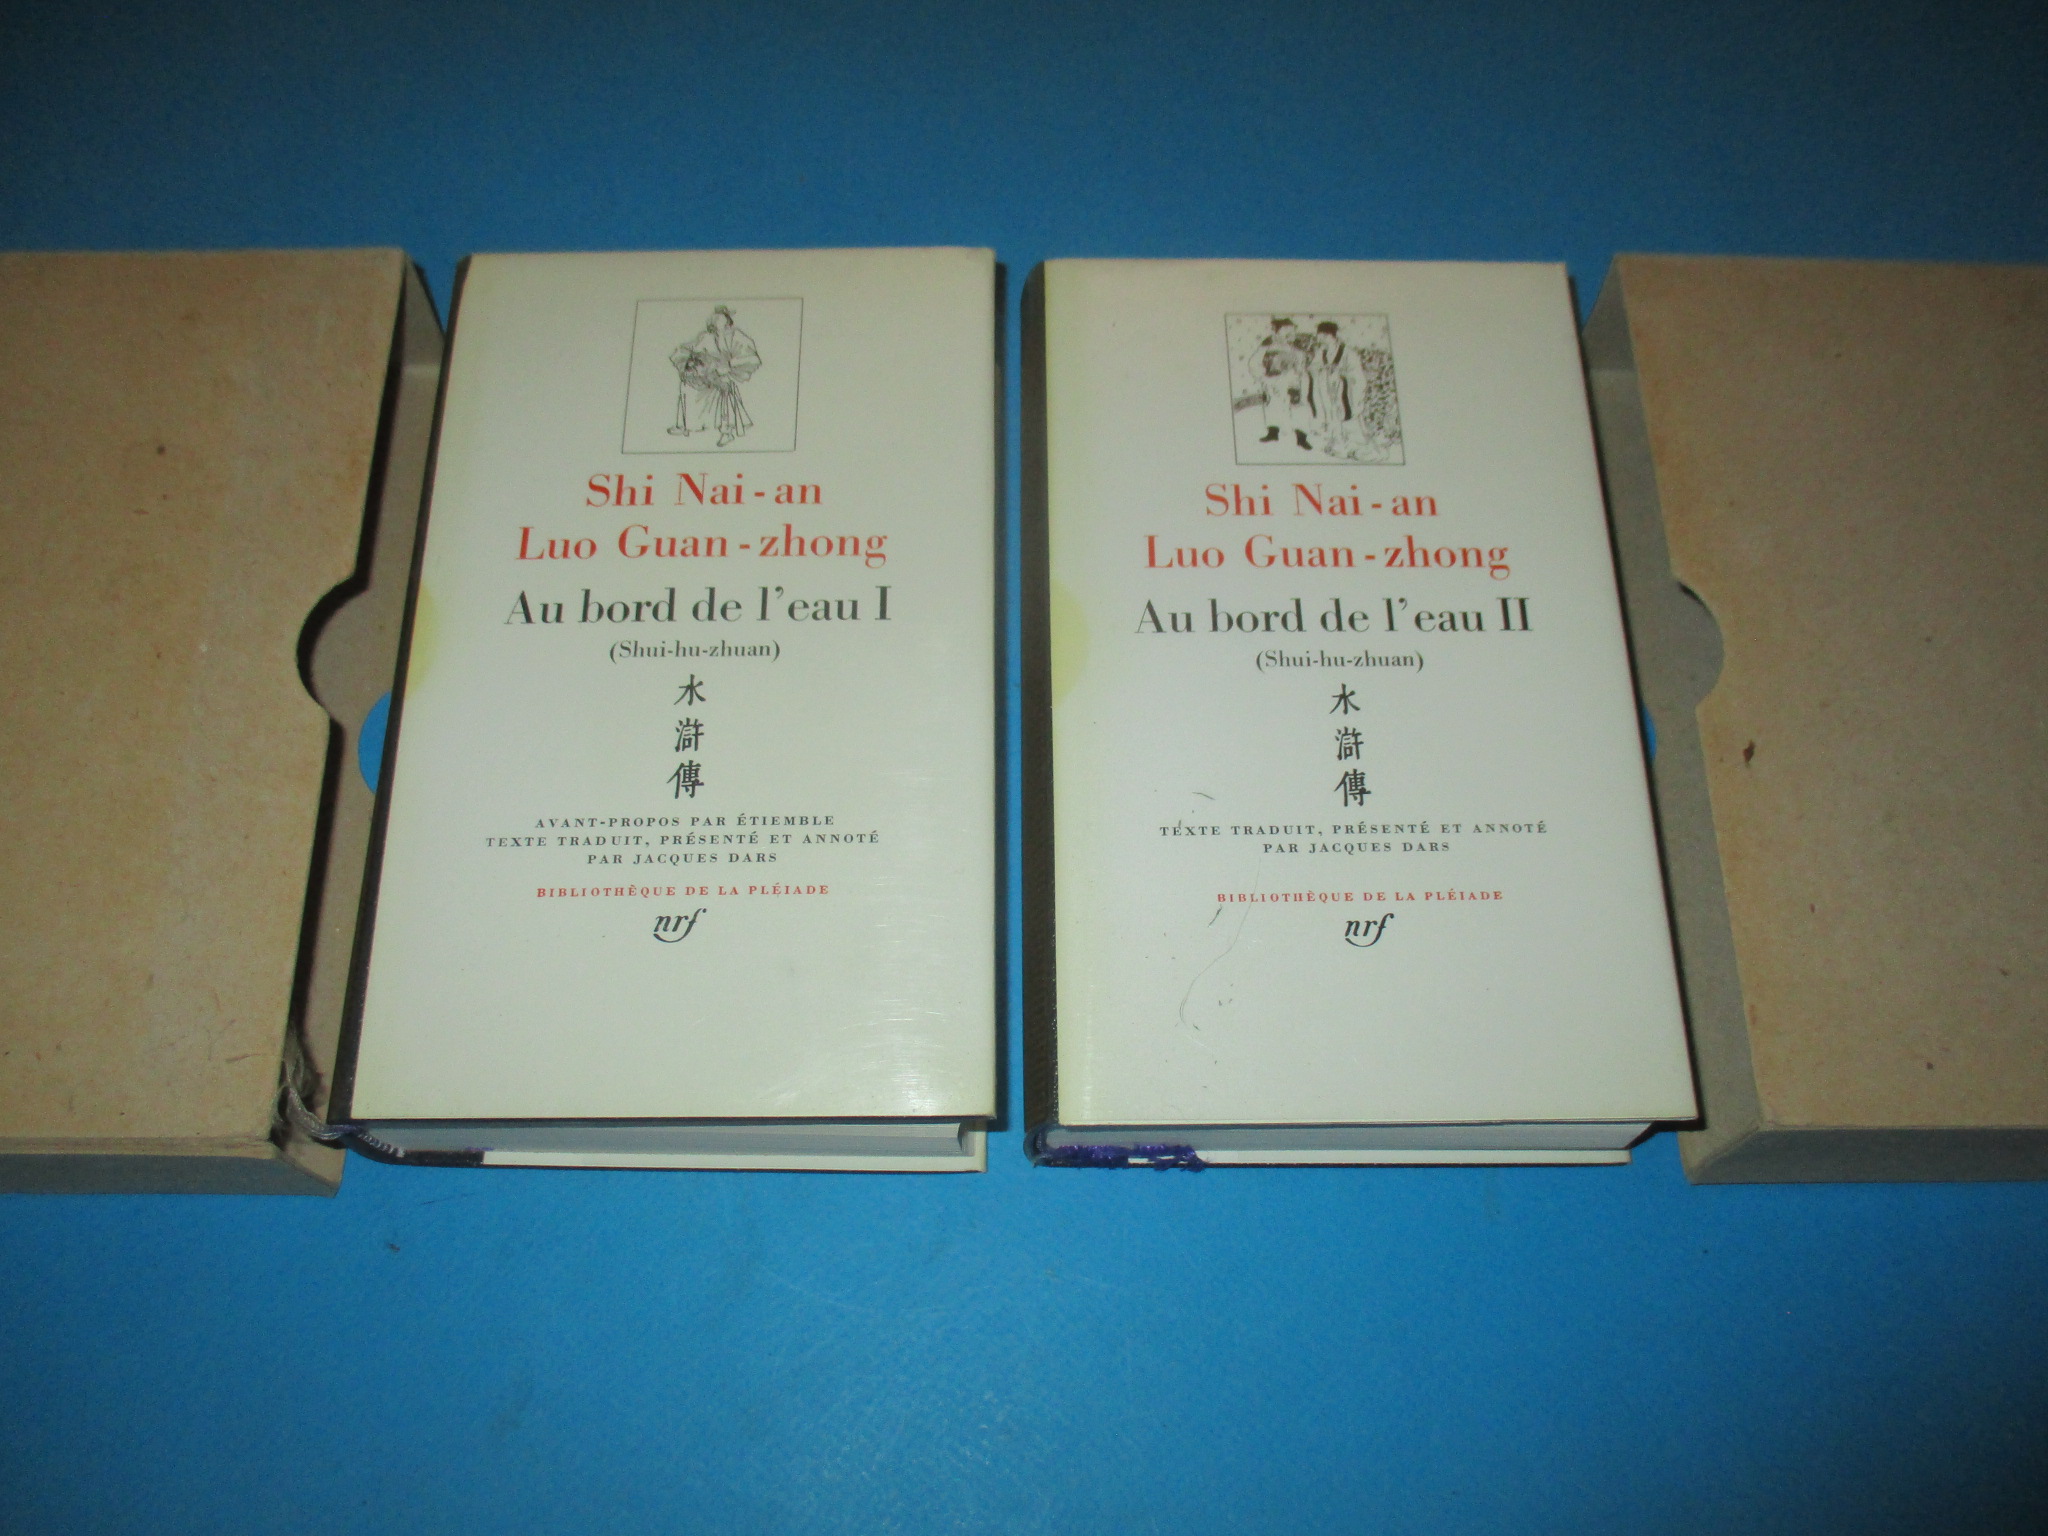 Au bord de l\'eau I & II, Shi Nai-an Luo Guan-zhong, tomes 1 & 2 complets, Shui-hu-zhuan, La Pléiade 1978